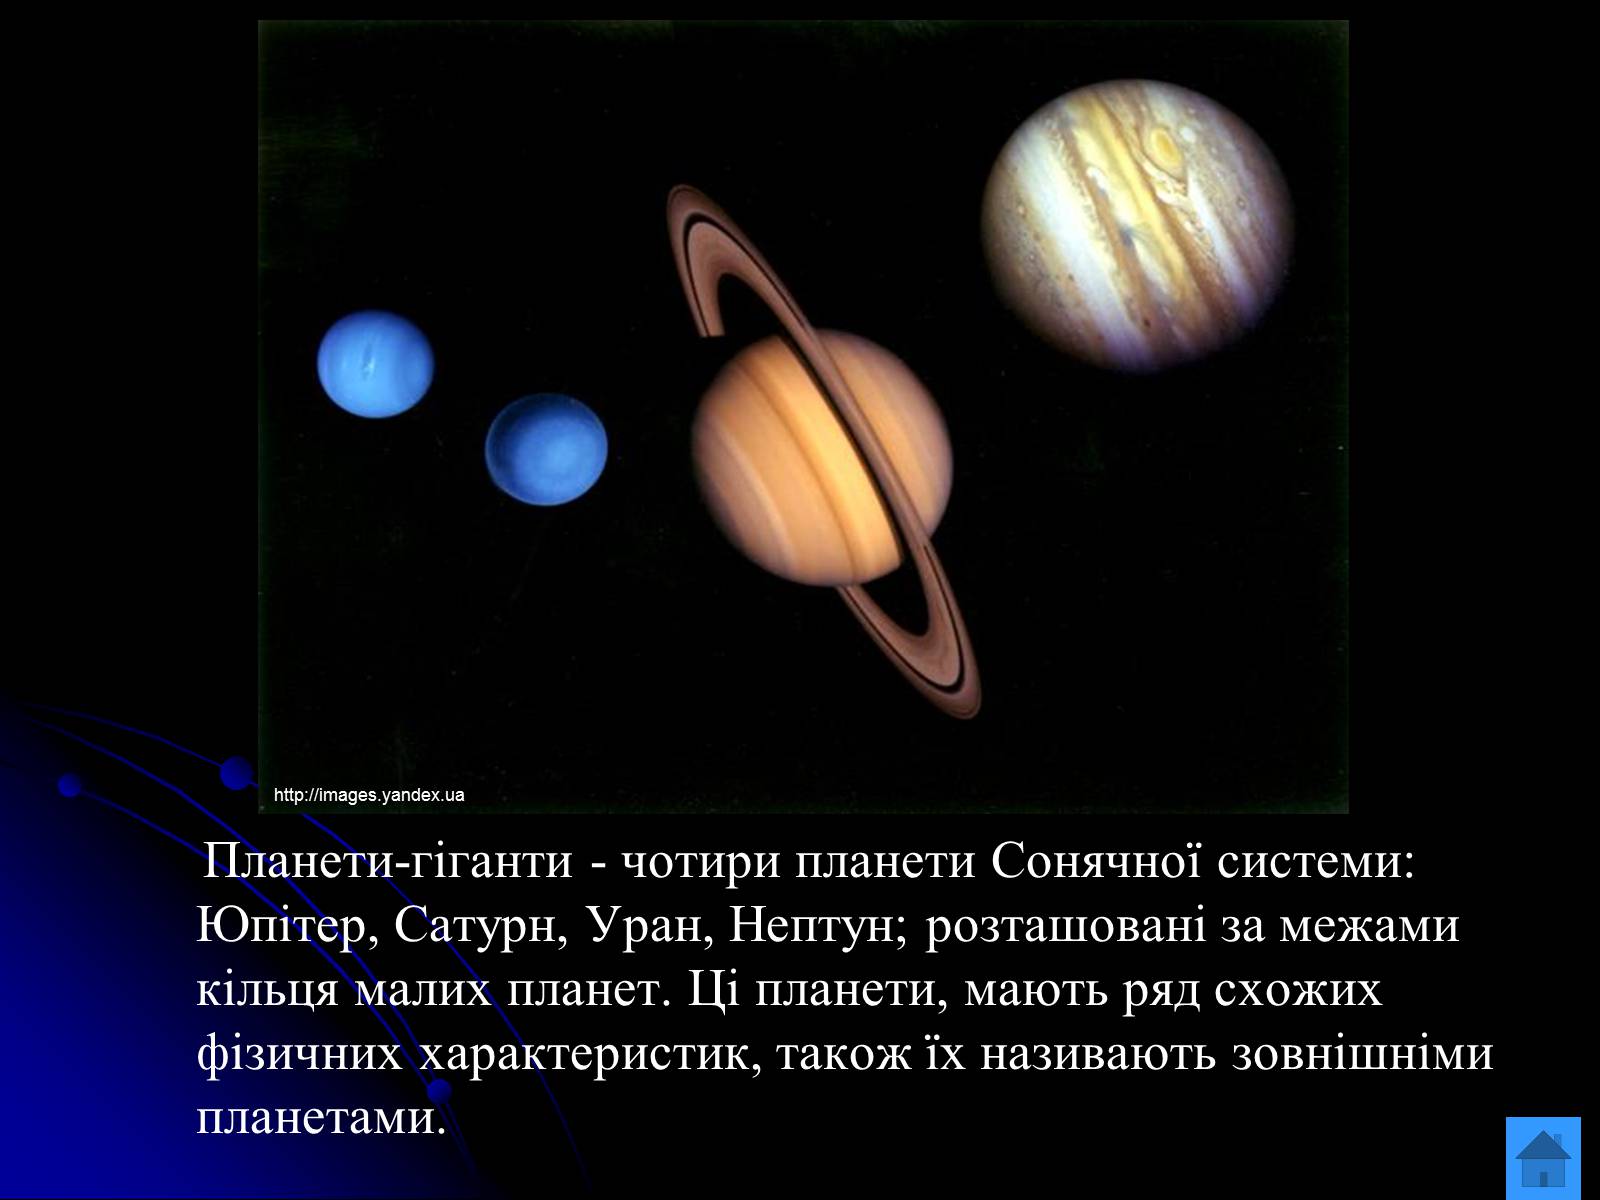 Сатурн Уран Нептун школа 4 класс кратко. Русский язык 2 класс окружающий мир Сатурн Уран Нептун. Яка Планета Сонячної системи має найбільшу кількість супутників?.